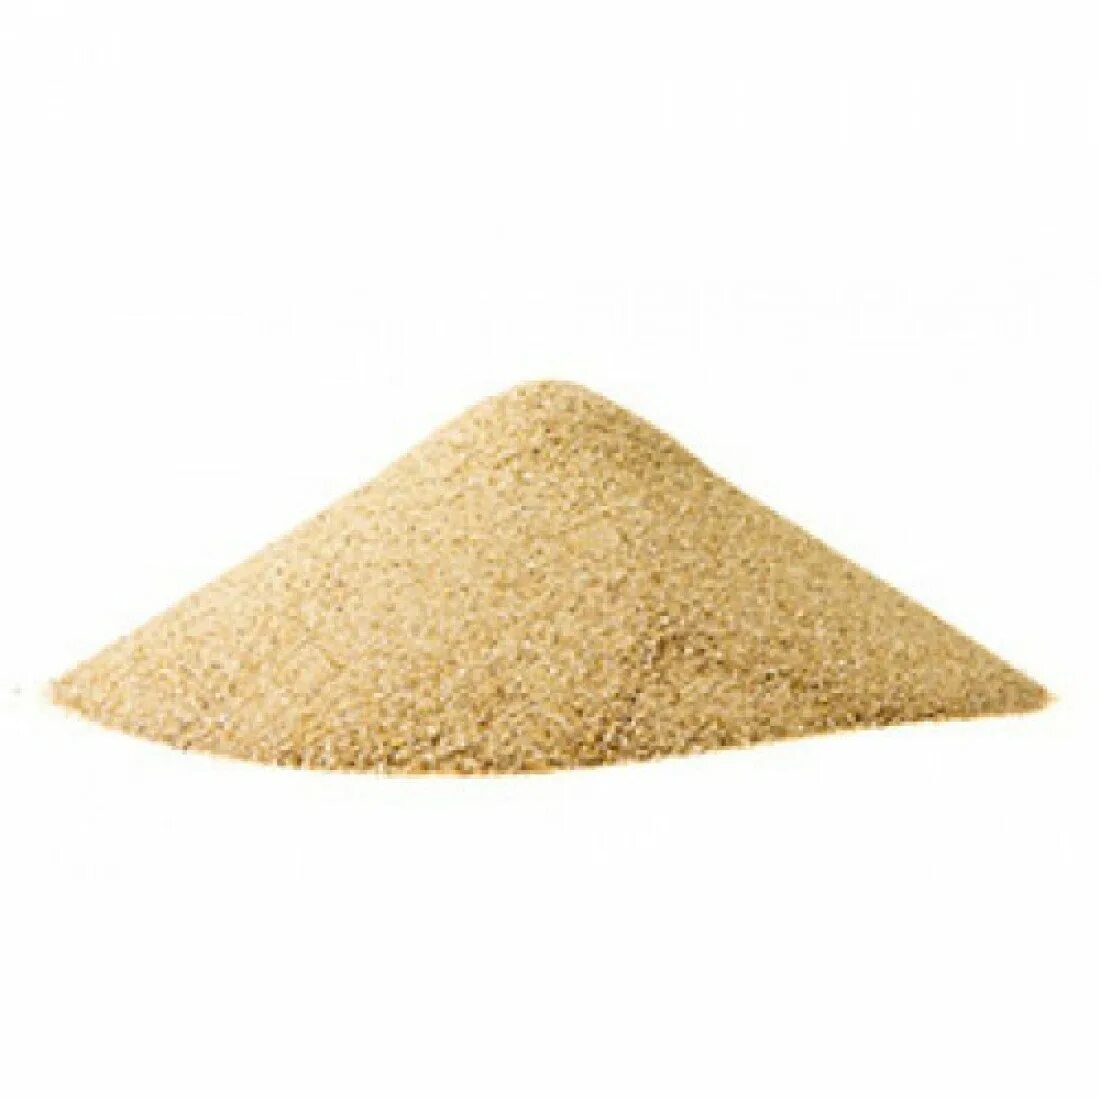 Кварцевый песок. Куча песка. Песок сеяный. Кучка песка. Купить щебень в леруа мерлен